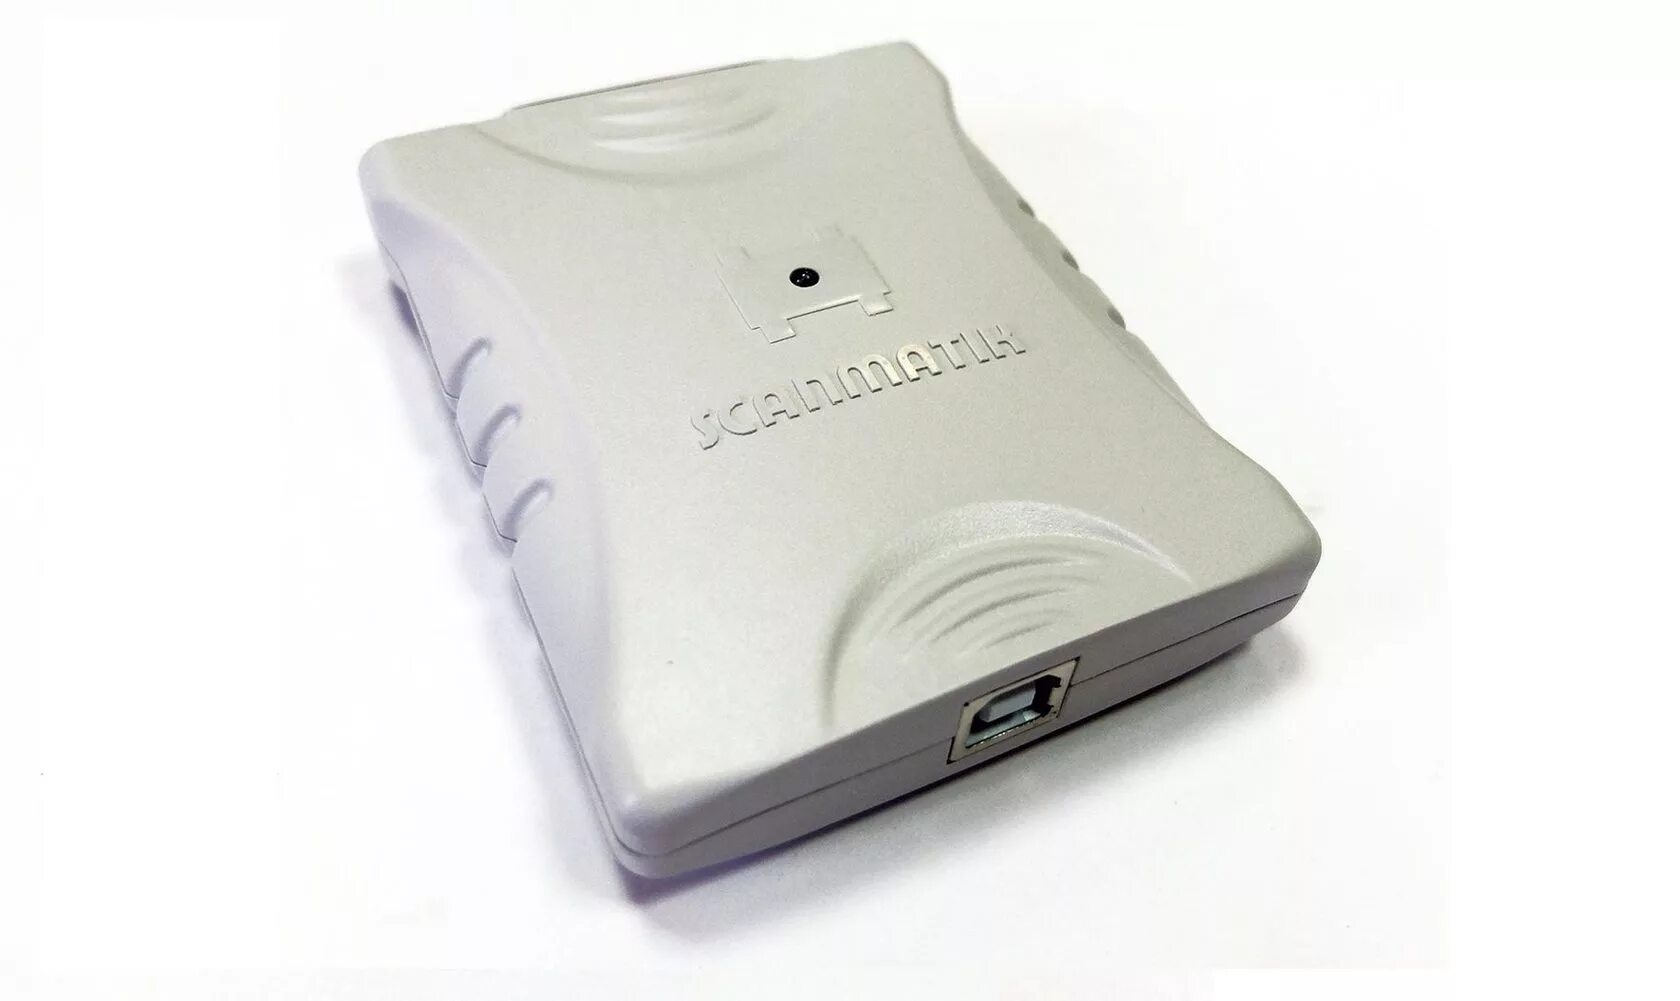 Сканер диагностический Сканматик 2. Диагностический адаптер Сканматик 2 Pro. Диагностический сканер Сканматик 2 •USB + Bluetooth (Scanmatik). Сканер "Сканматик 2 Pro" (базовый комплект).